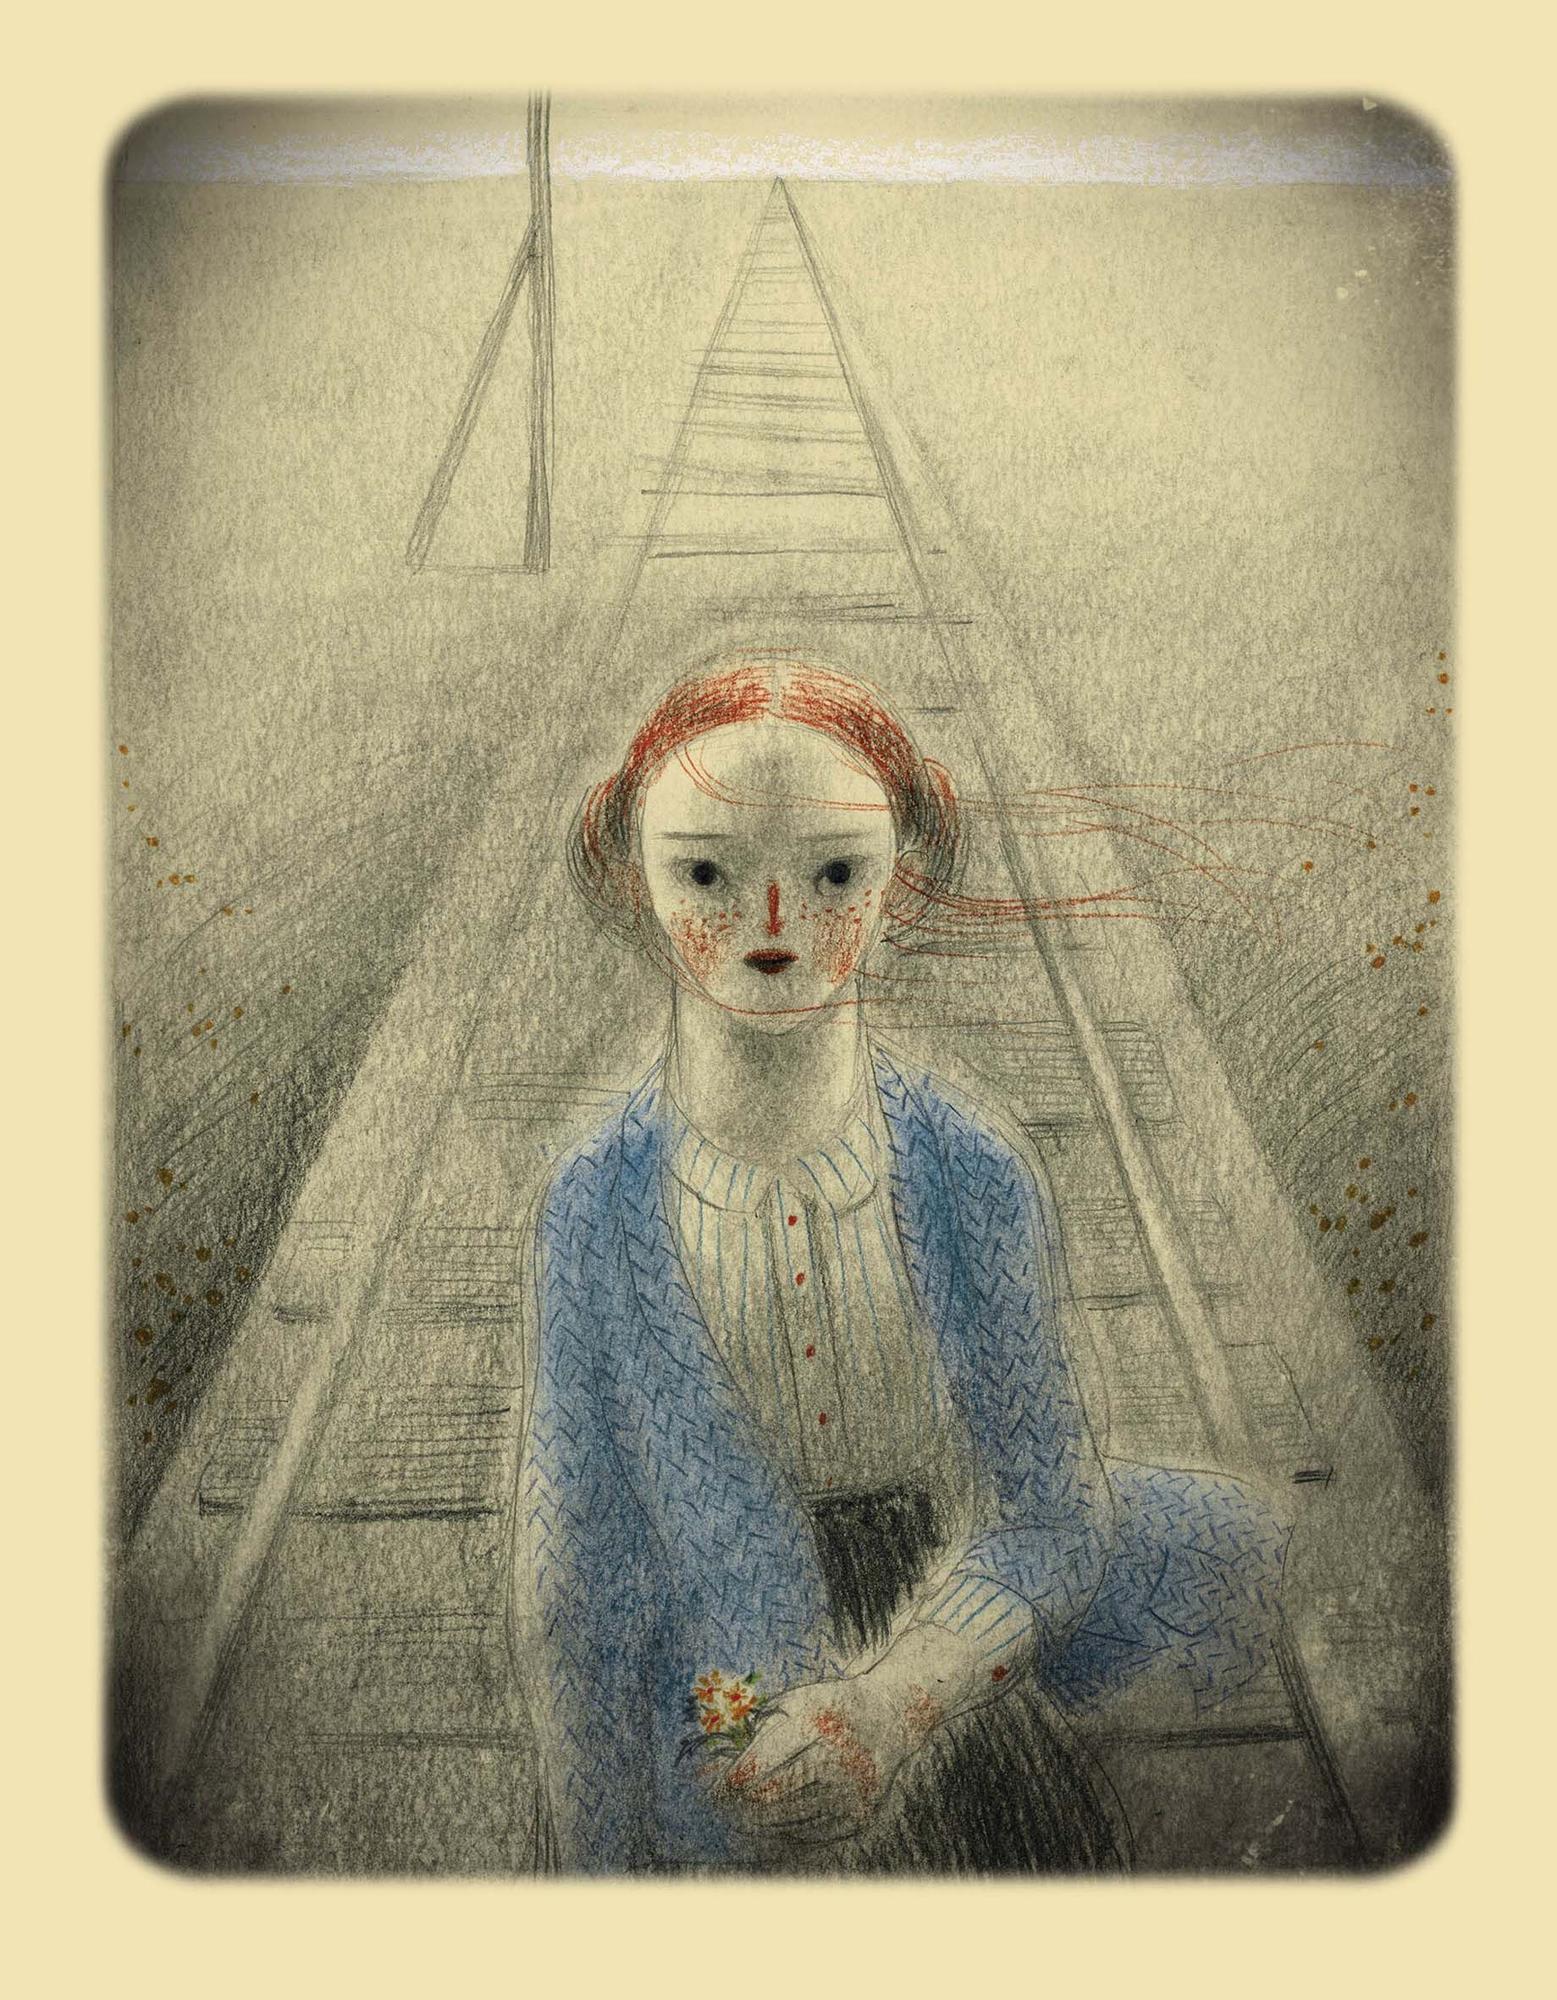 Algunes de les il·lustracions del llibre 'Viajes en trenes de primera clase' de Dani Torrent